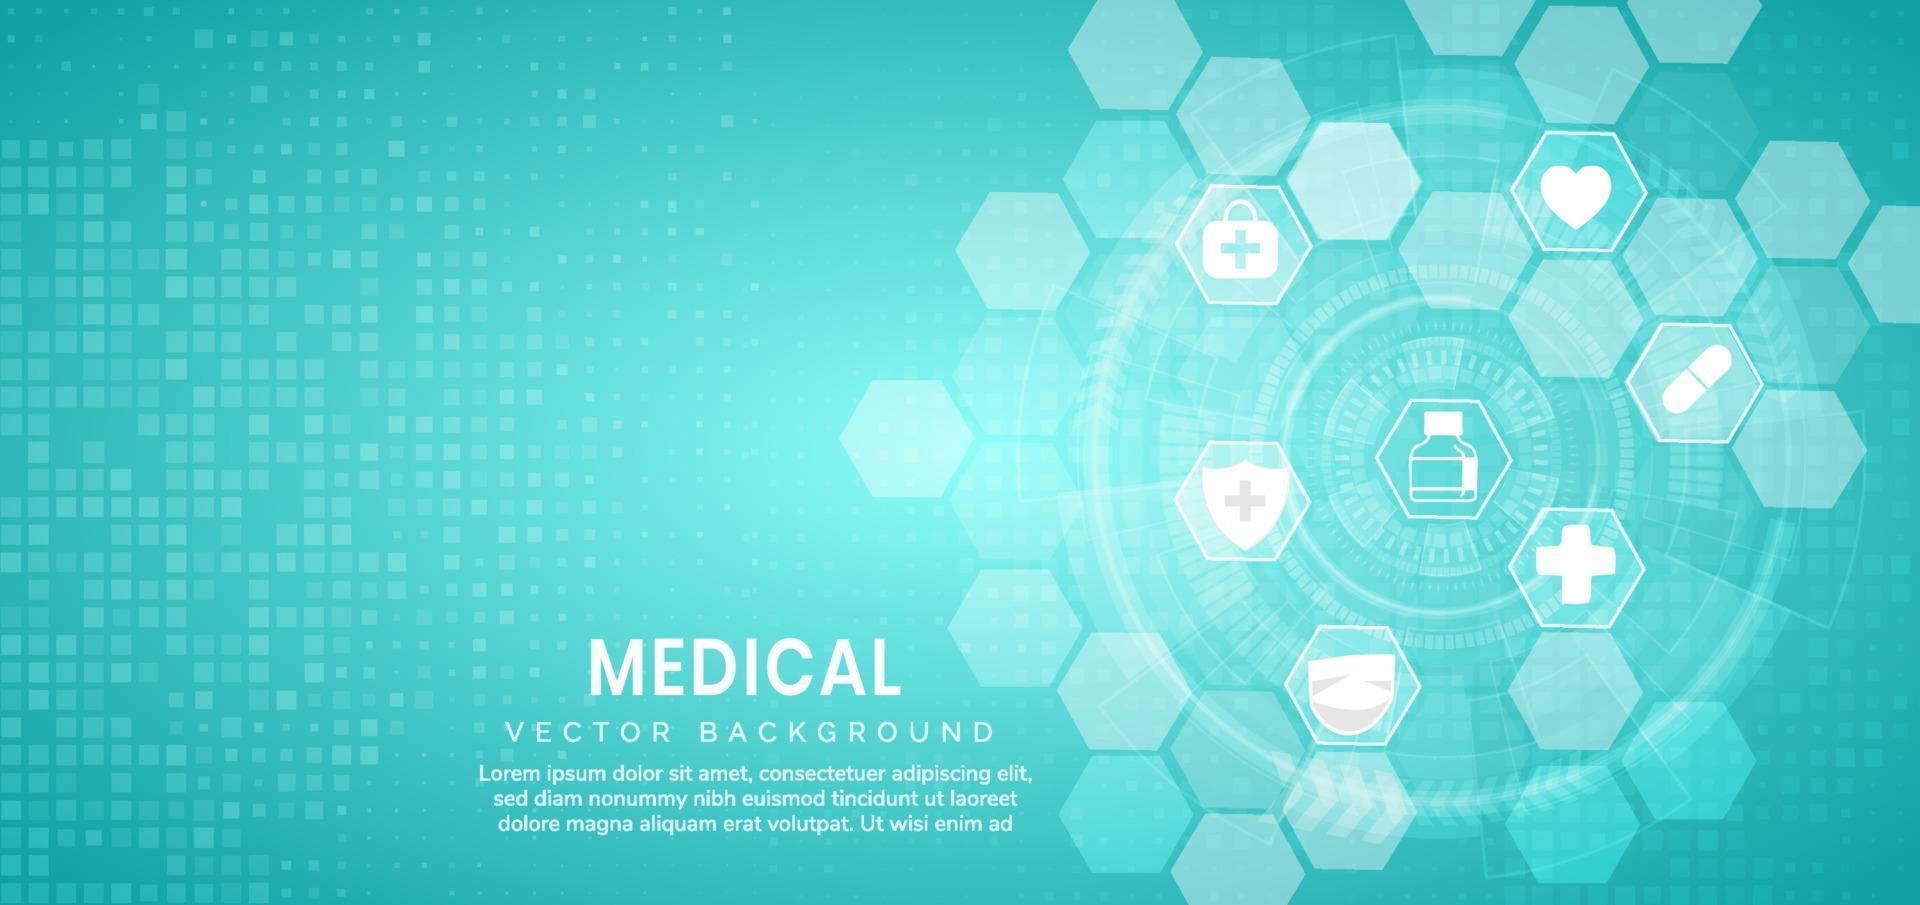 Fondo azul abstracto del modelo del hexágono. concepto de tecnología y ciencia médica y patrón de icono de atención médica. vector